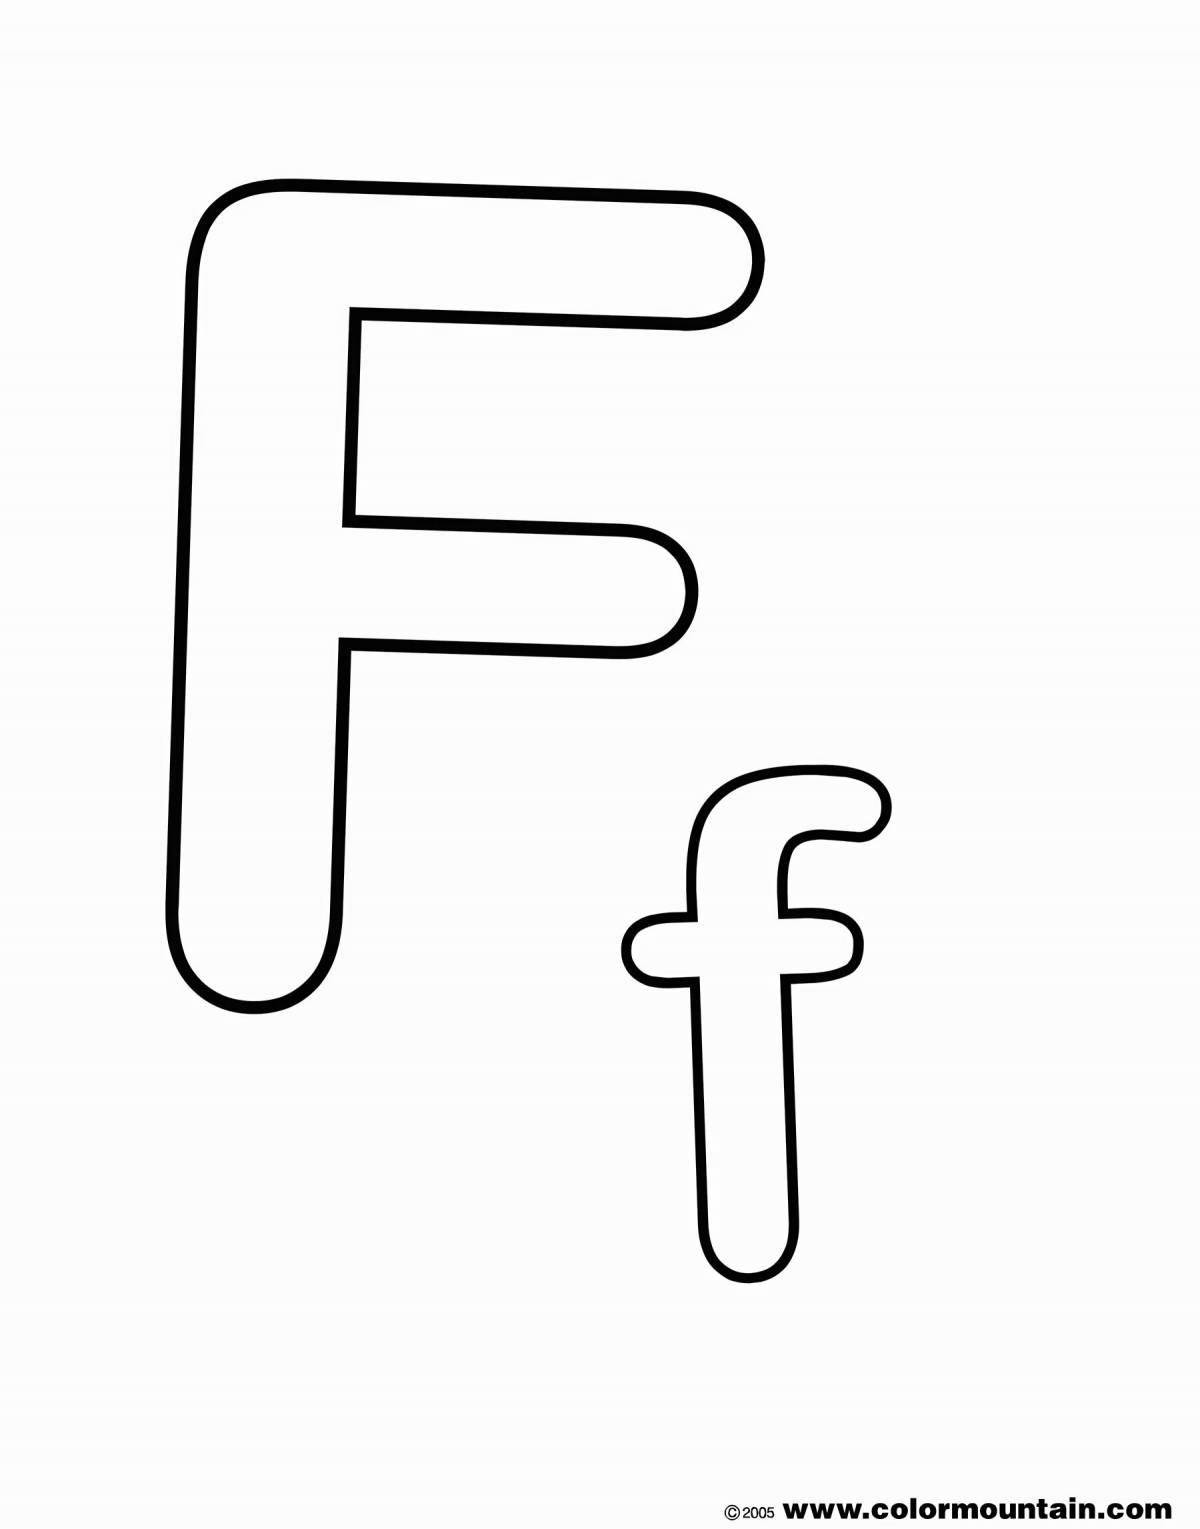 Захватывающая раскраска с буквой f